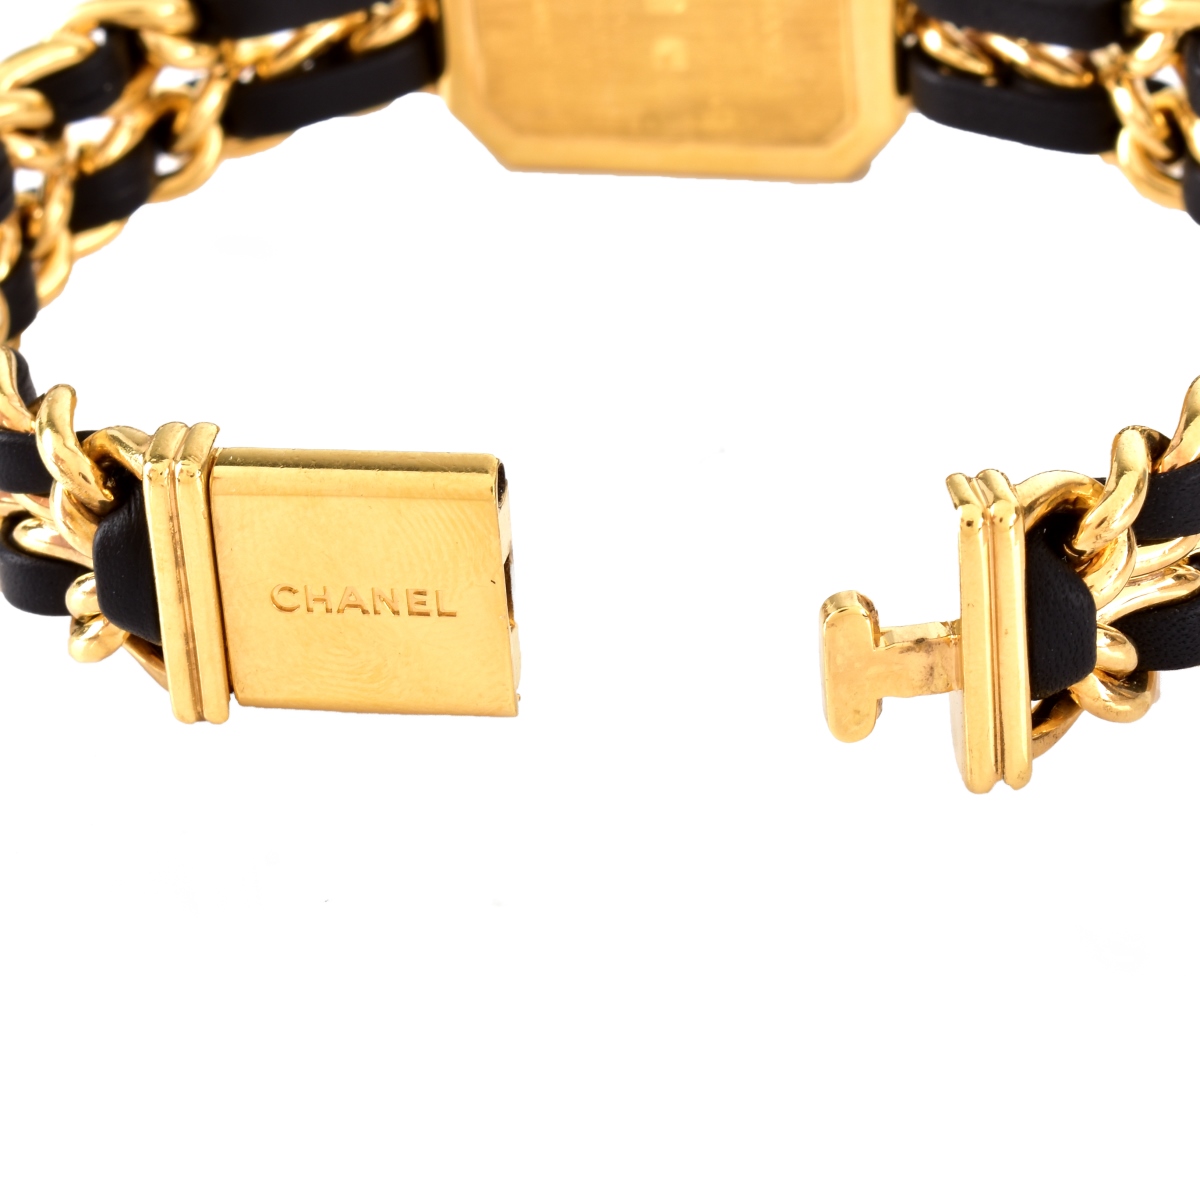 Chanel Premier Watch